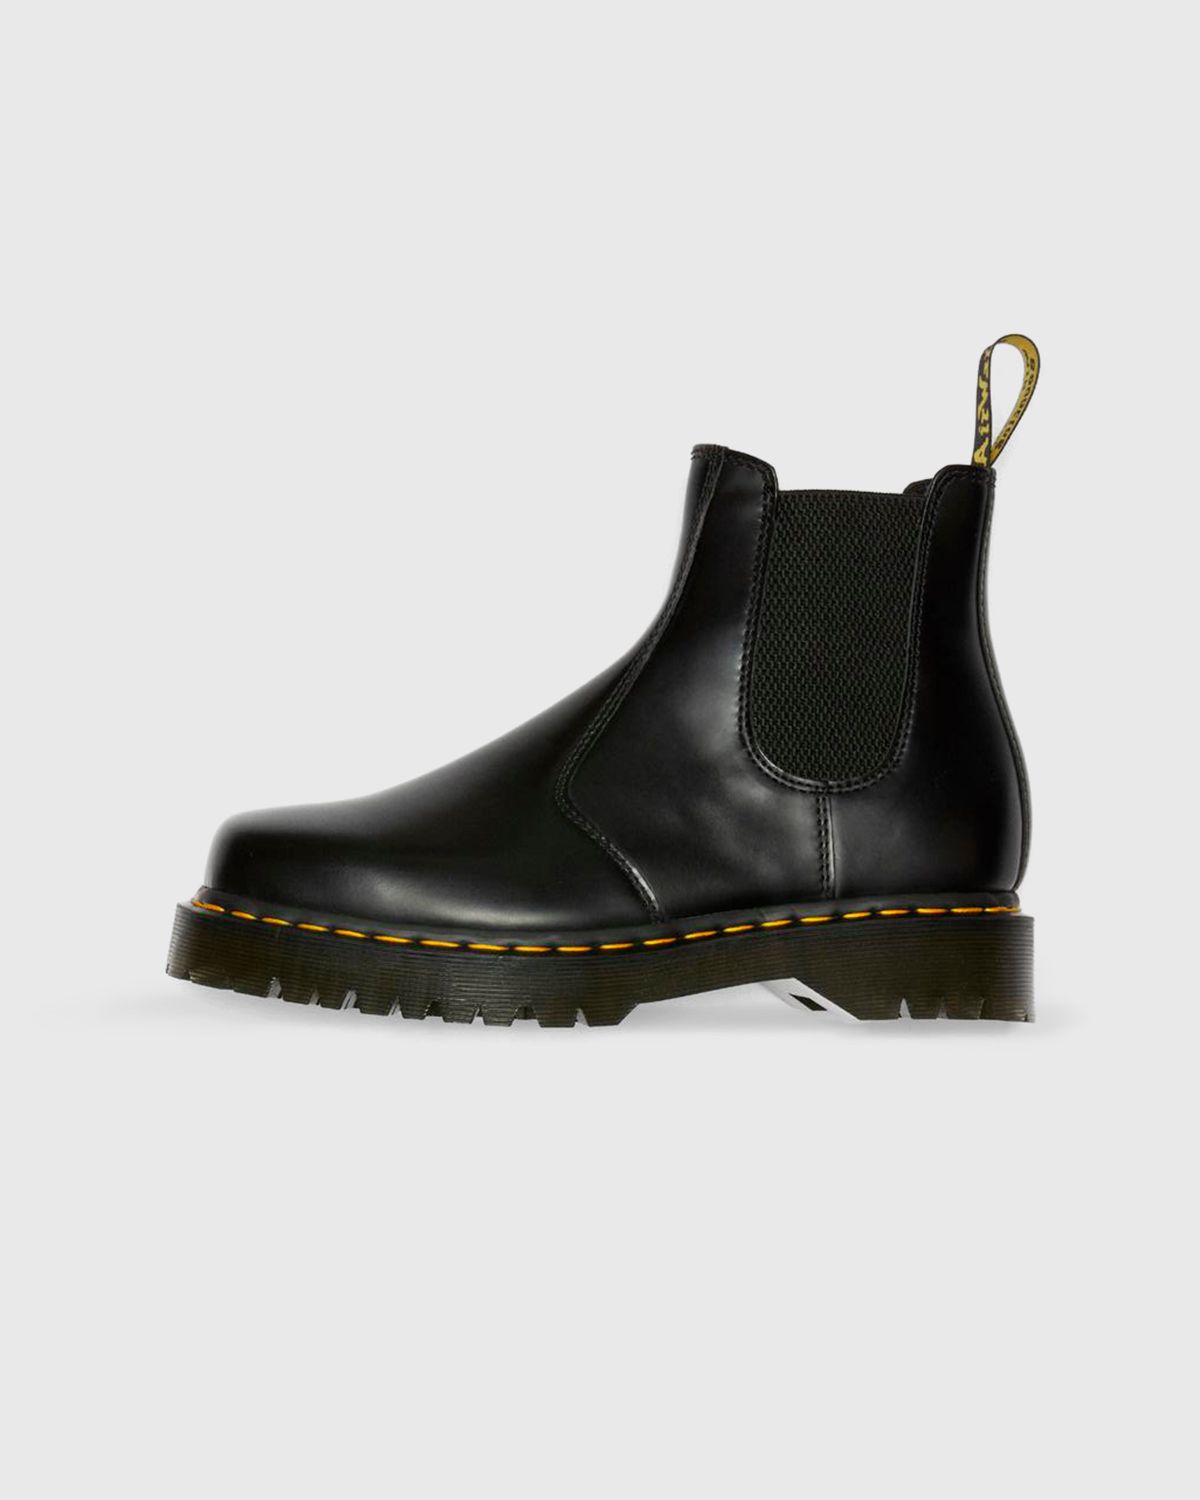 Dr. Martens – 2976 Bex Squared Black Polished Smooth - Shoes - Black - Image 2